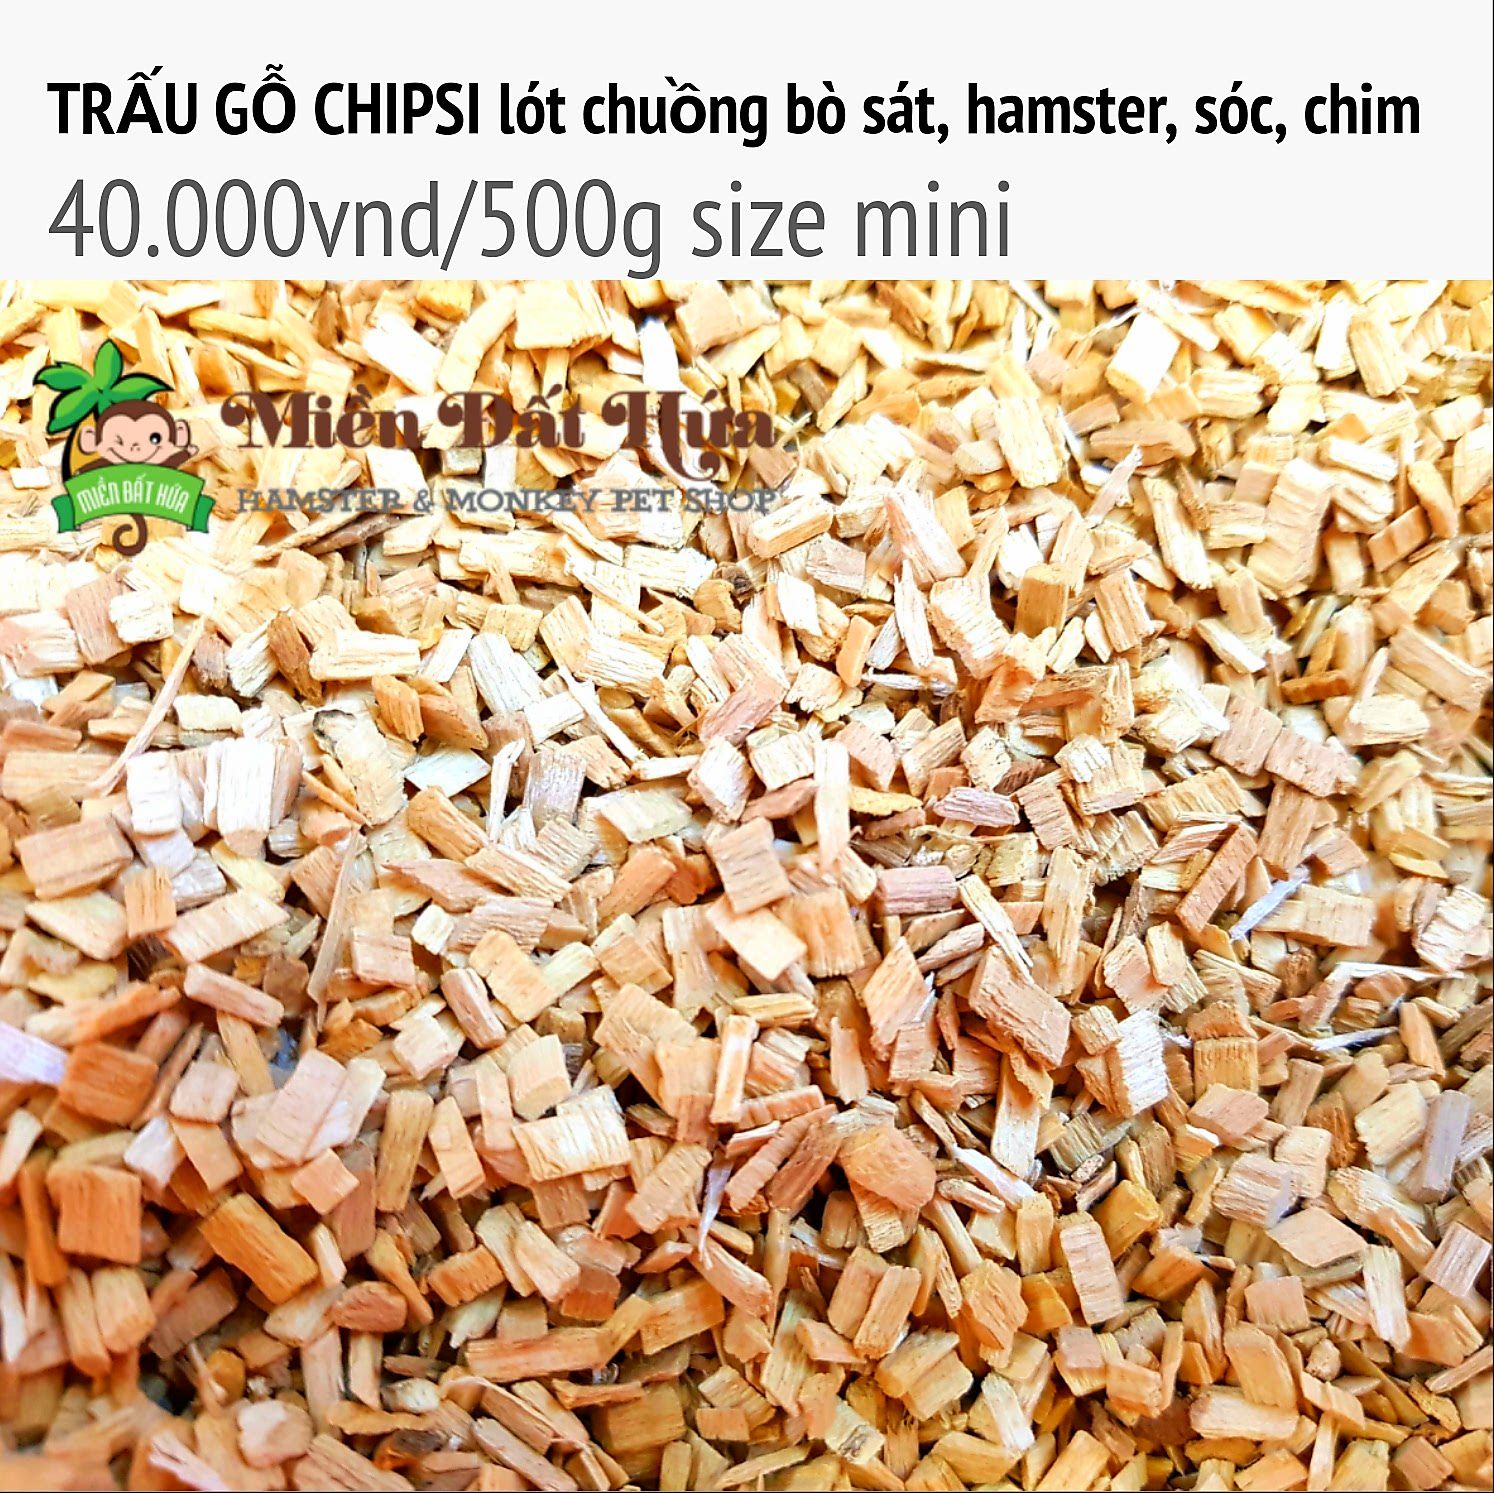 Trấu gỗ chipsi lót chuồng size mini 500g